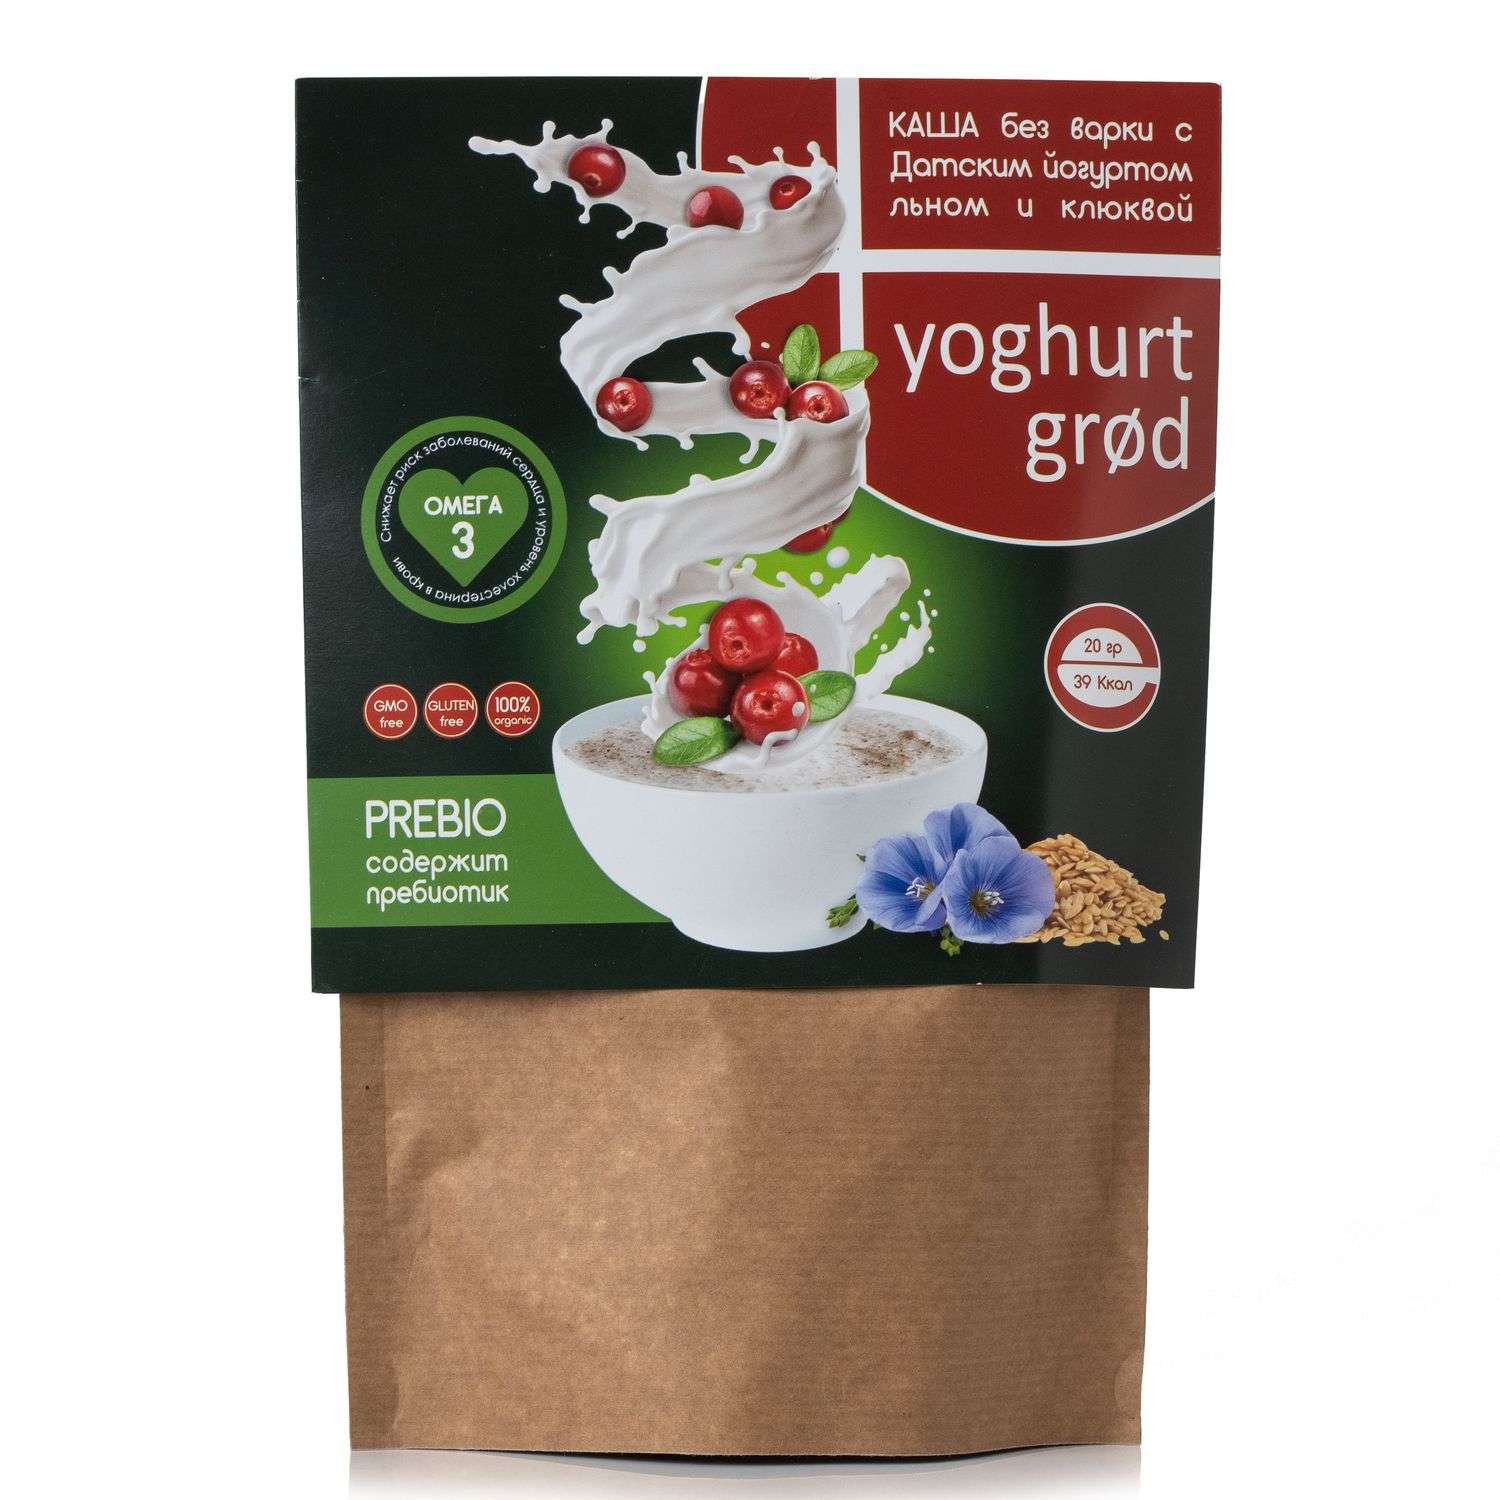 Каша Сиб-КруК Yoghurt grod льняная йогуртовая с цукатами ягод клюквы 300гр - фото 1